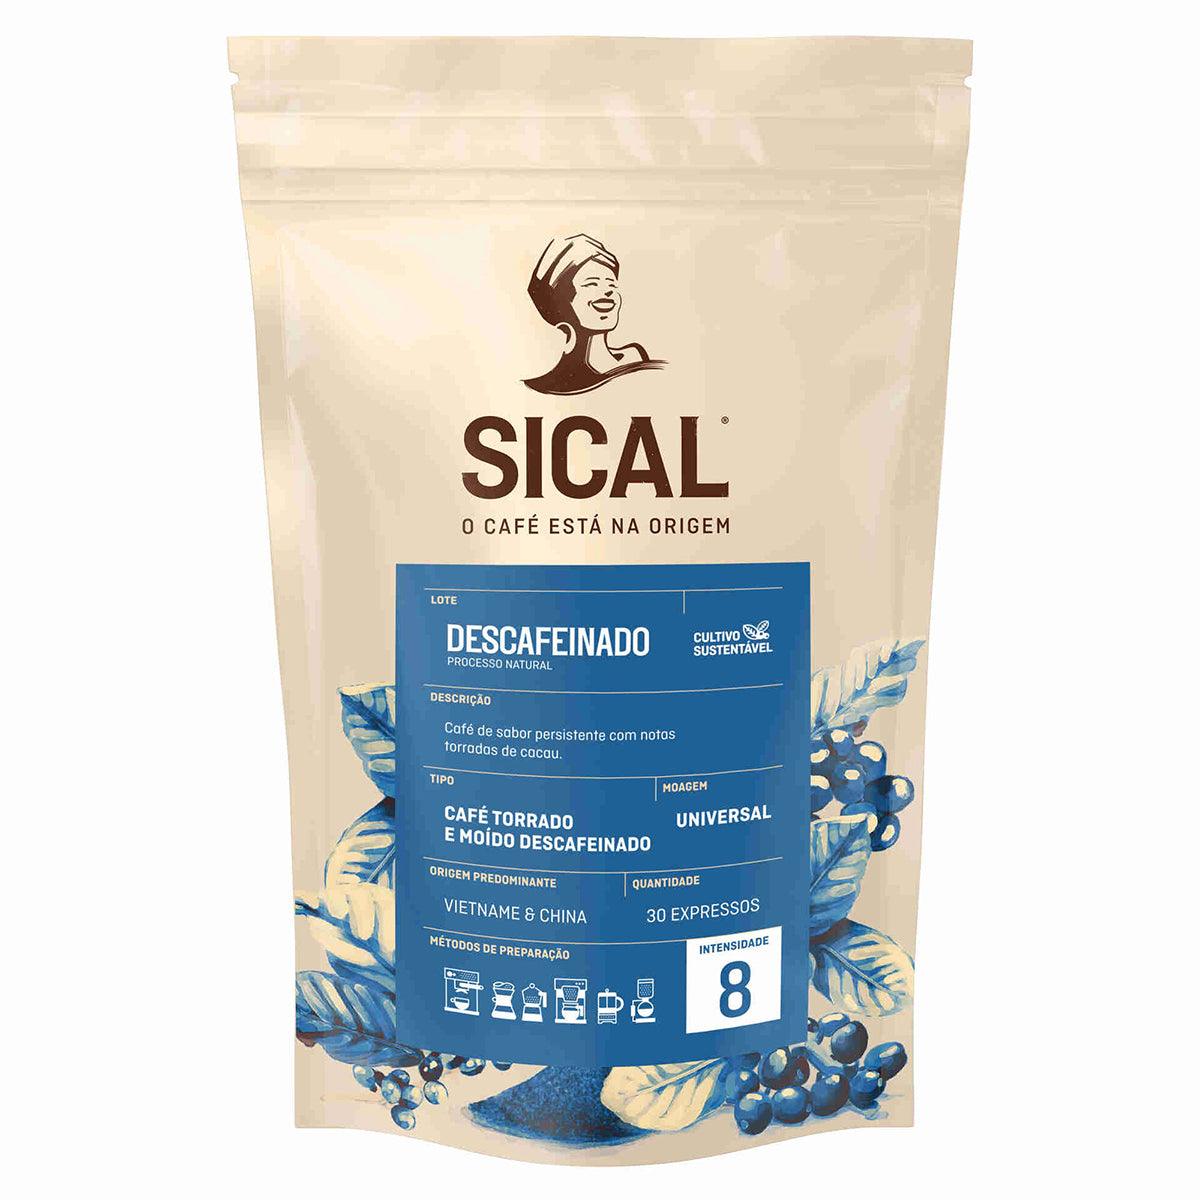 Sical Cafe Descafeinado 200g